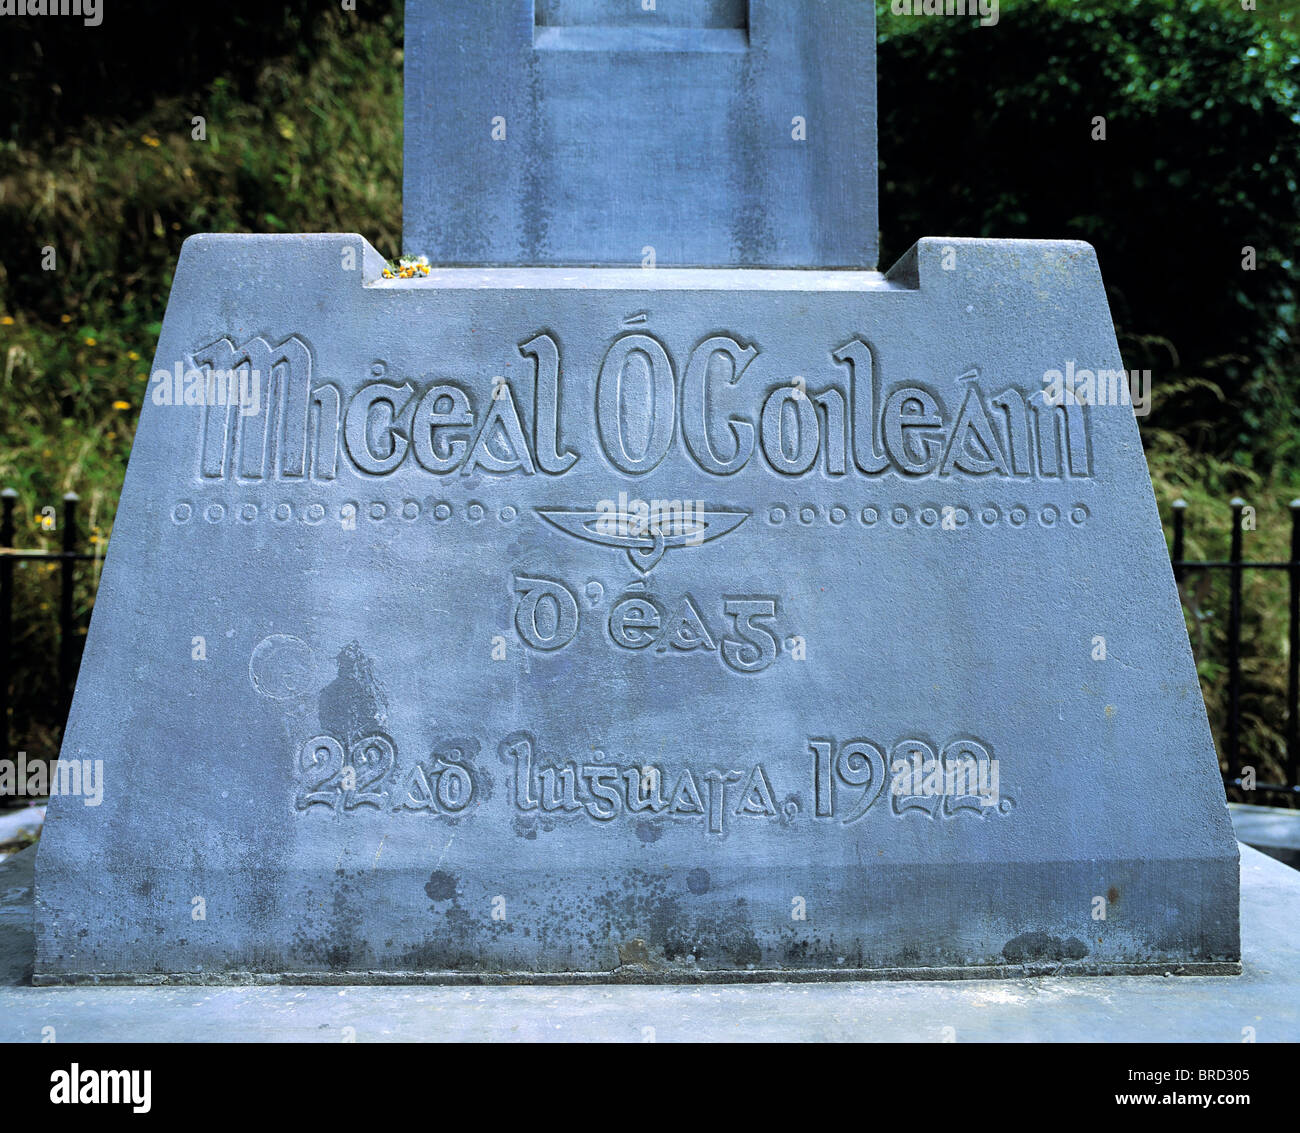 Michael Collins Memorial, Co. Cork, Irland; Denkmal für die irischen Revolutionsführers getötet während des irischen Bürgerkriegs im Jahre 1922 Stockfoto